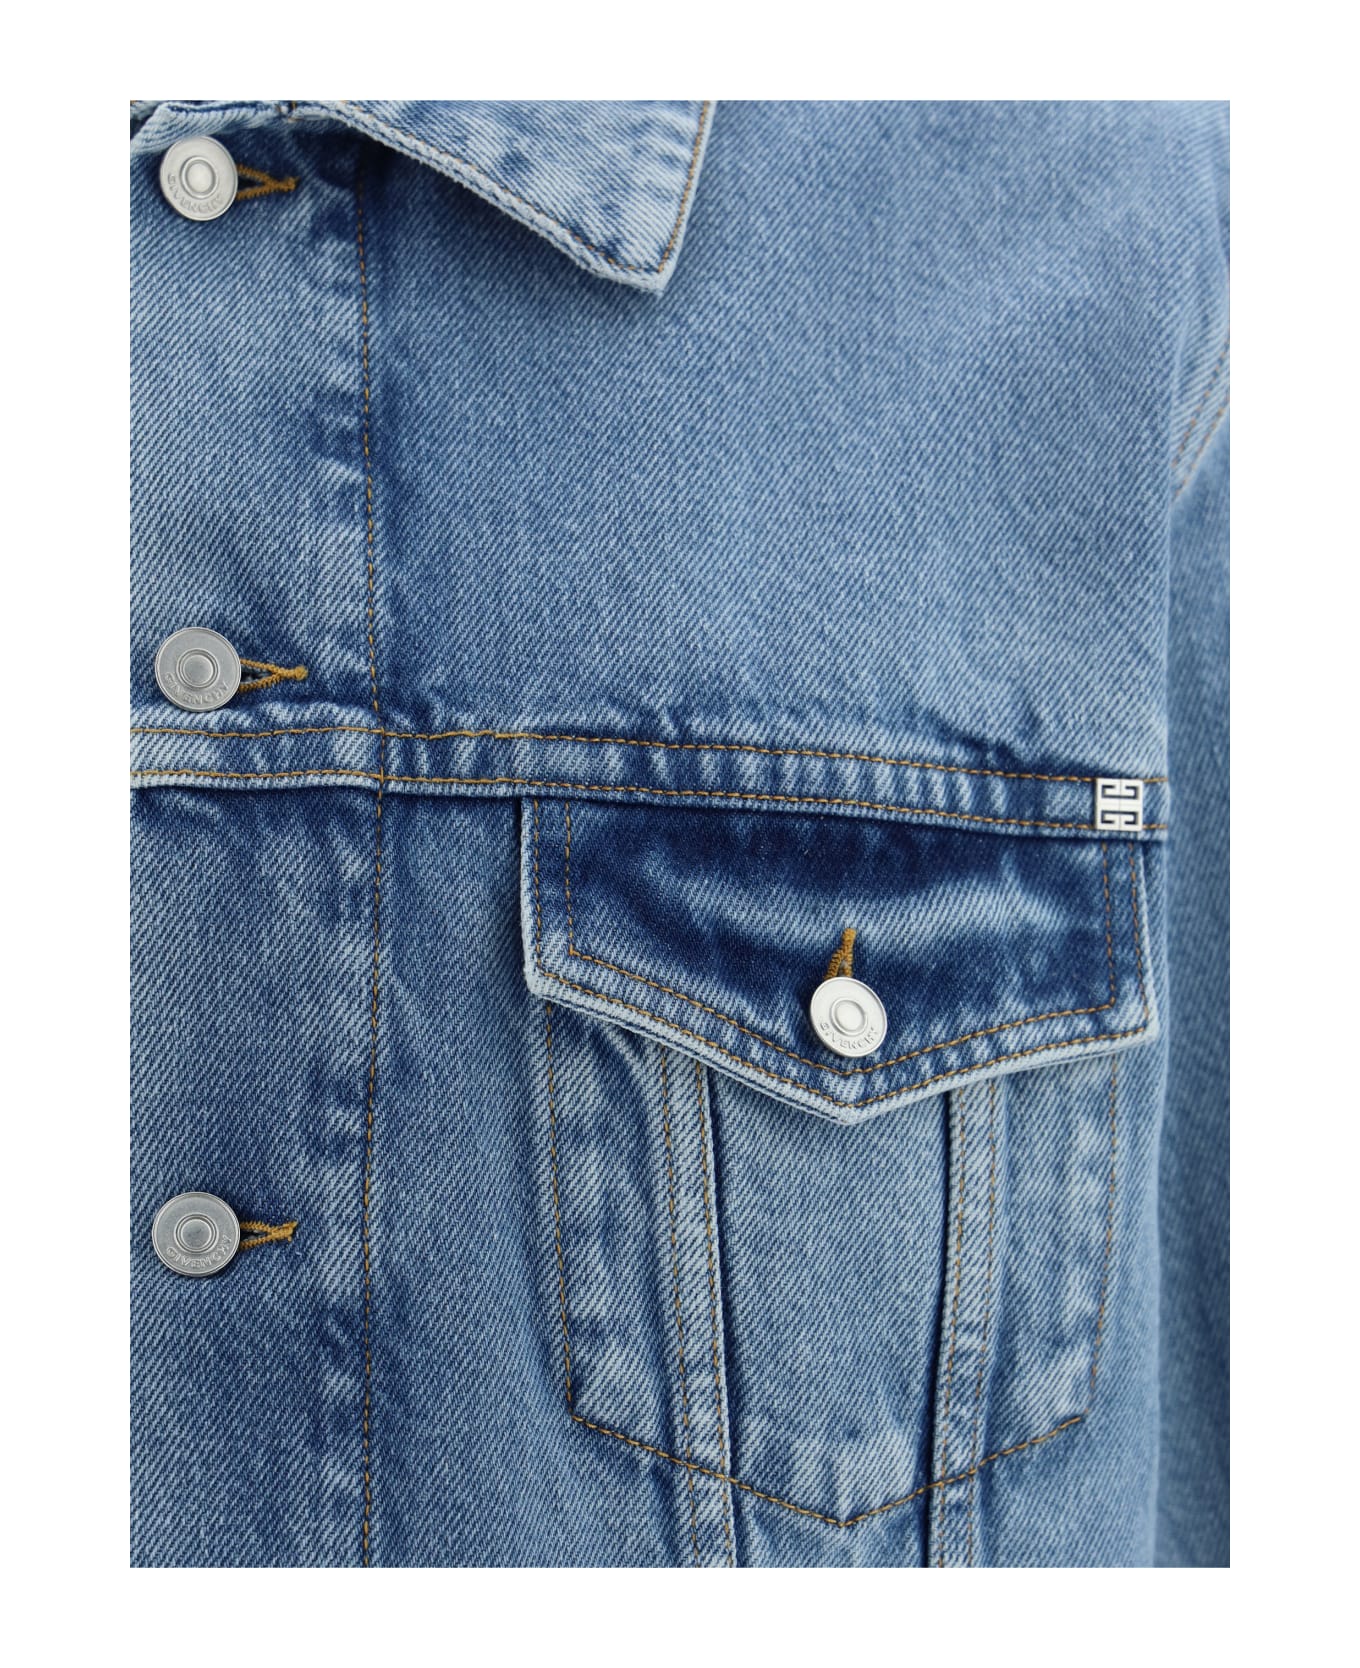 Givenchy Denim Jacket - Medium Blue ジャケット